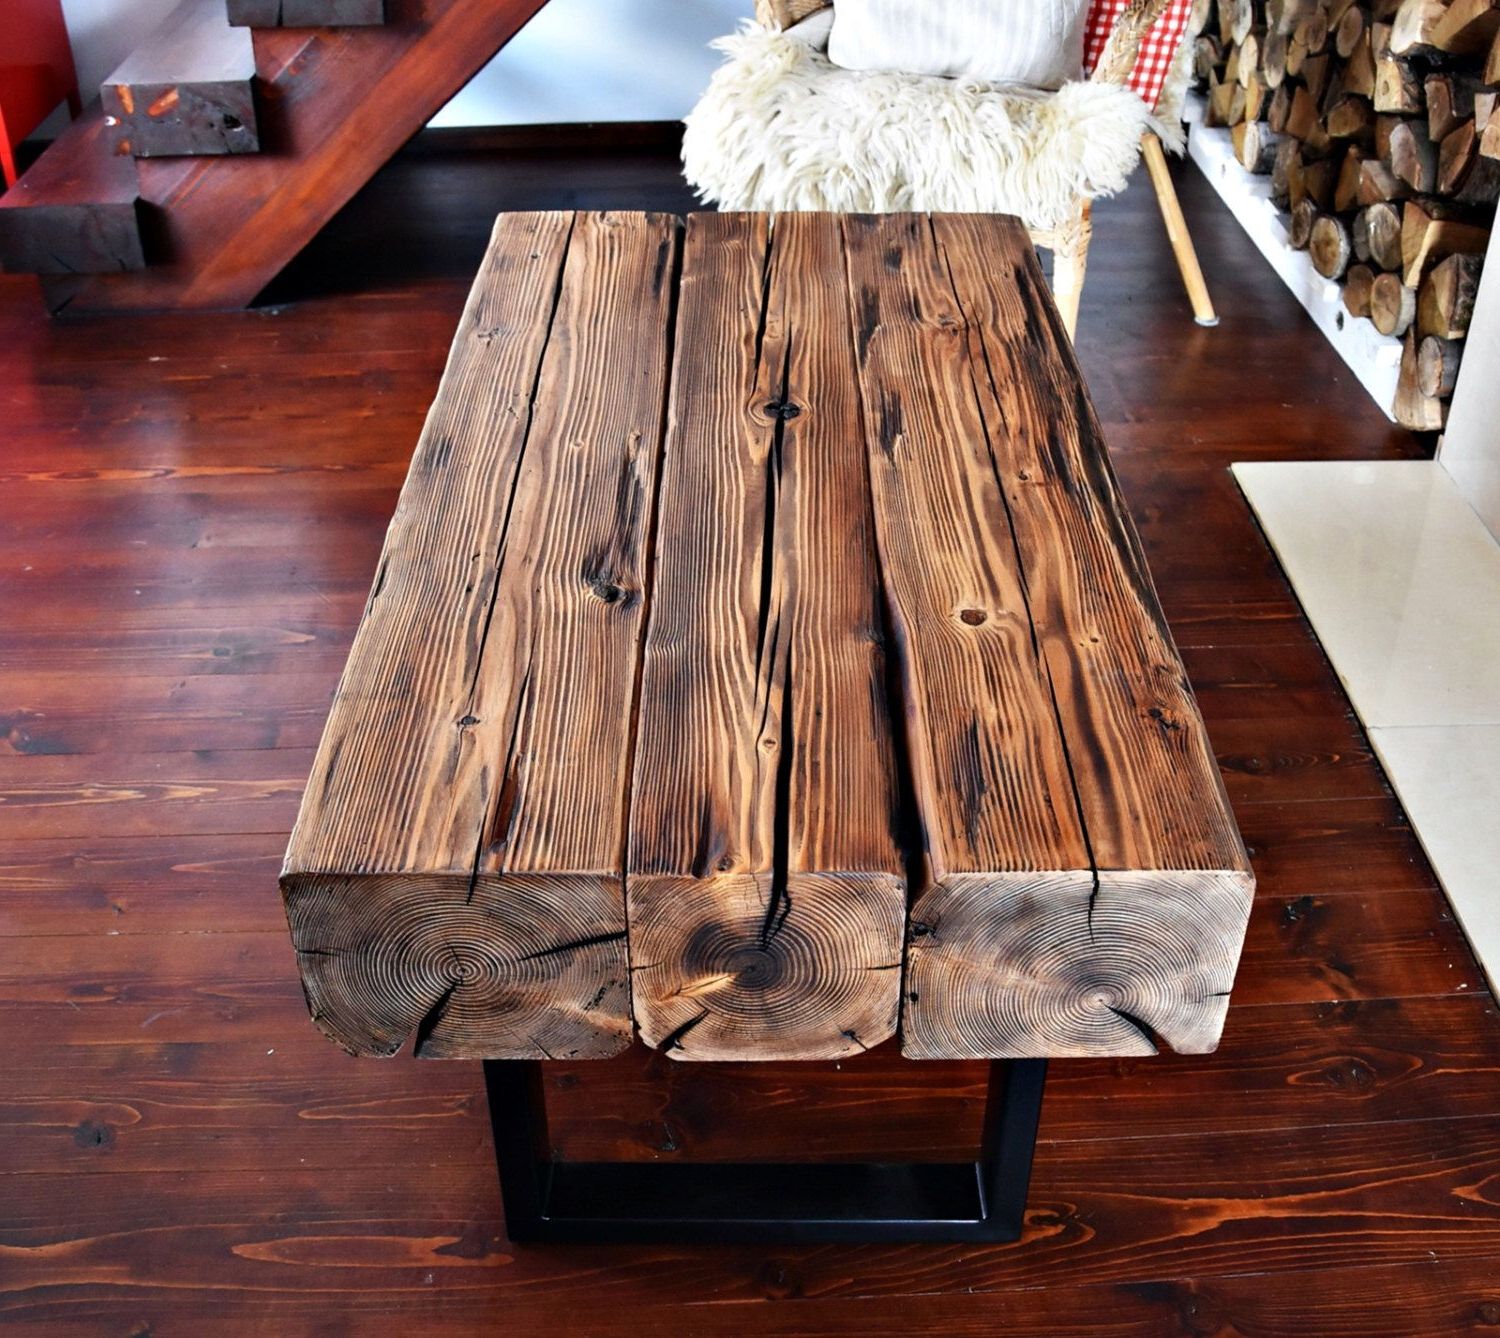 Handmade Reclaimed Wood & Steel Coffee Table Vintage Rustic Industrial Regarding Brown Rustic Coffee Tables (View 18 of 20)